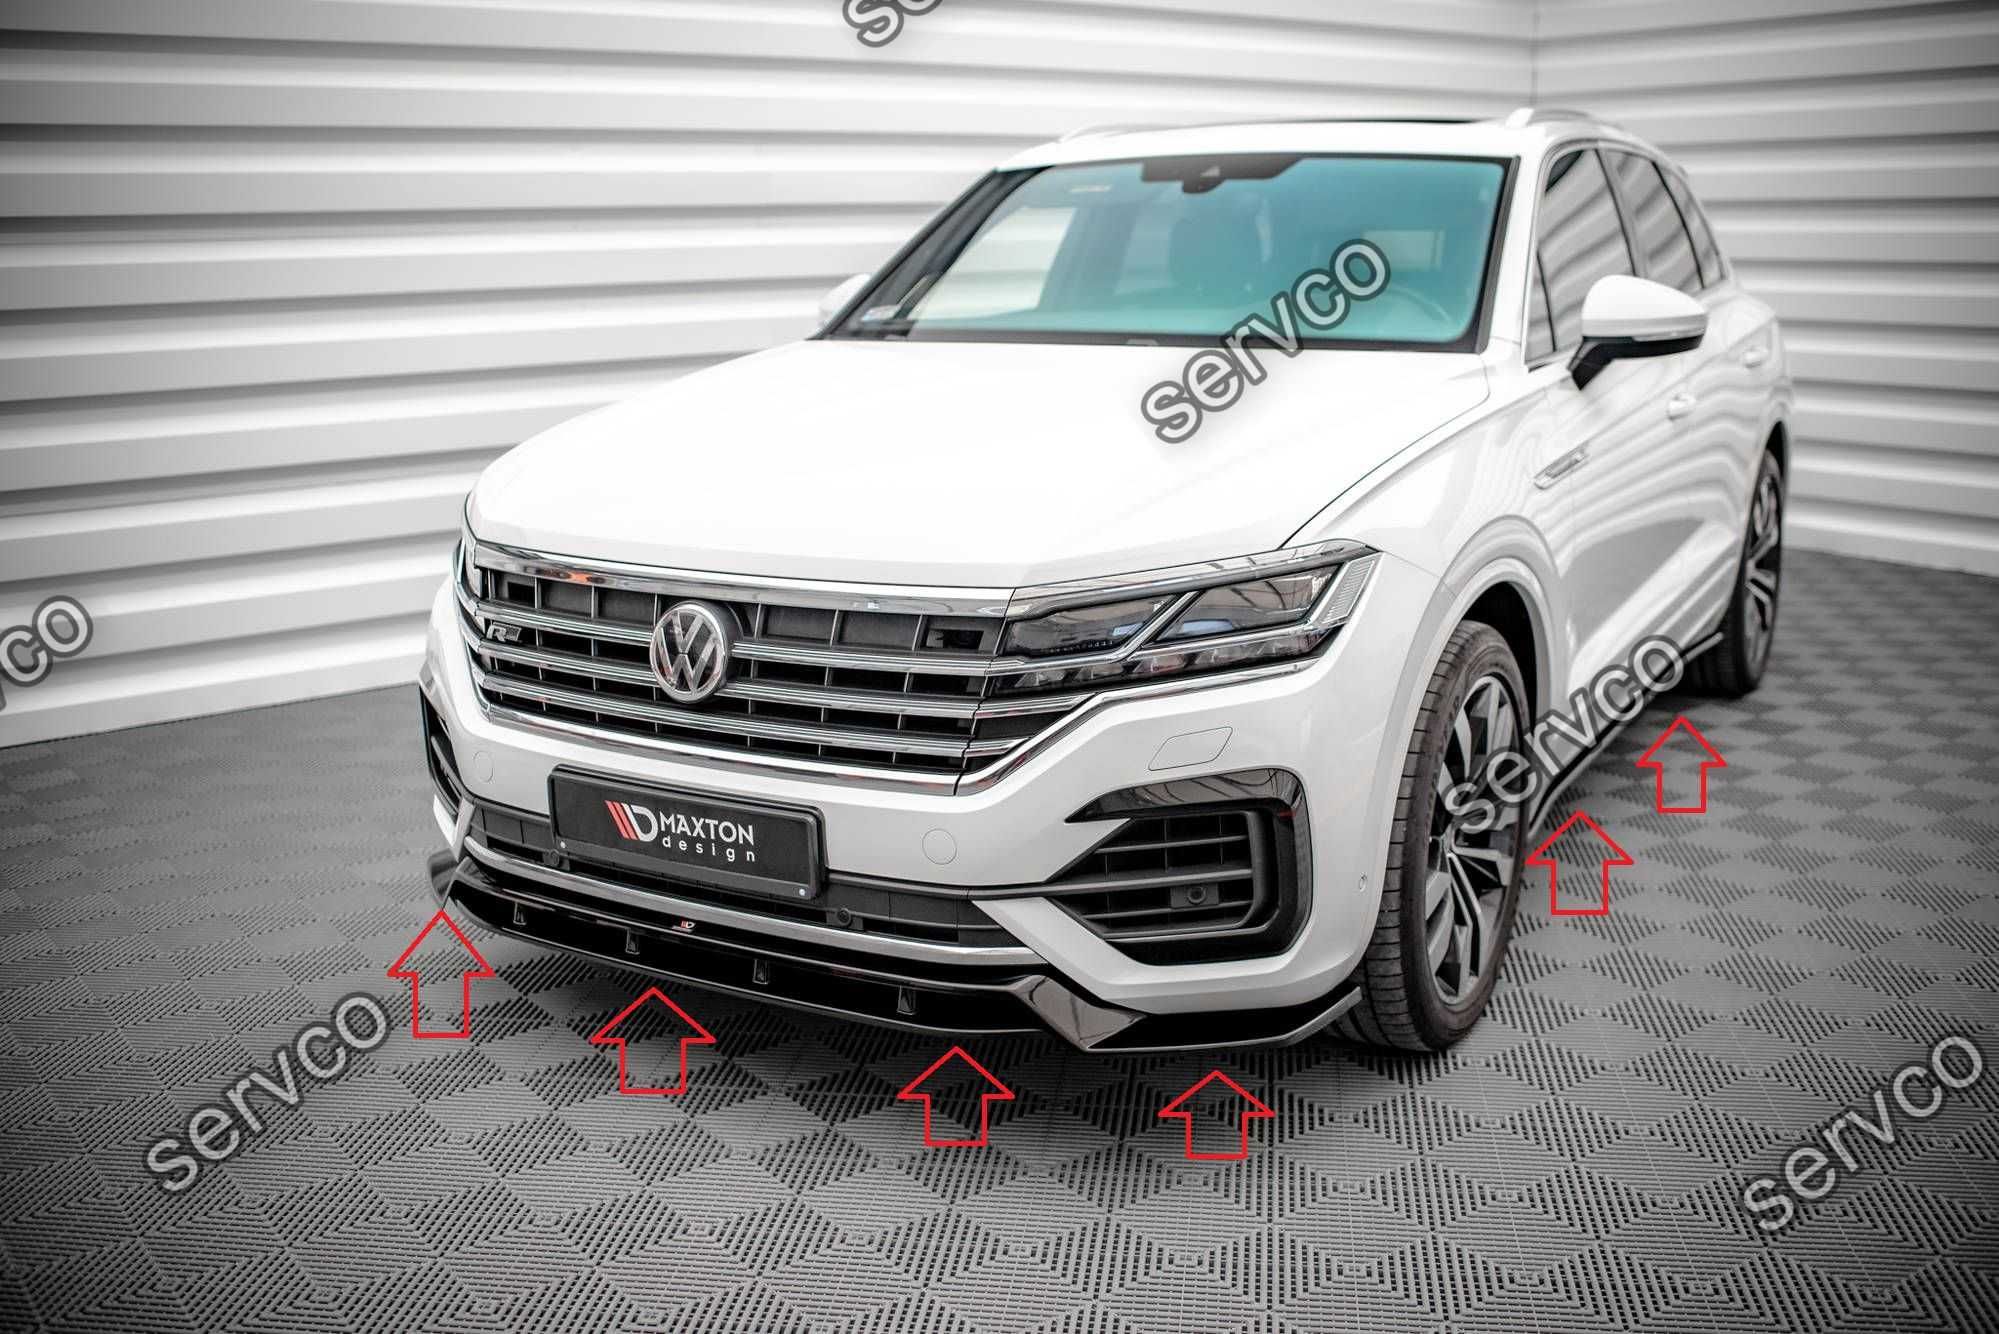 Pachet Body kit Volkswagen Touareg R-Line 2018- v2 - Maxton Design